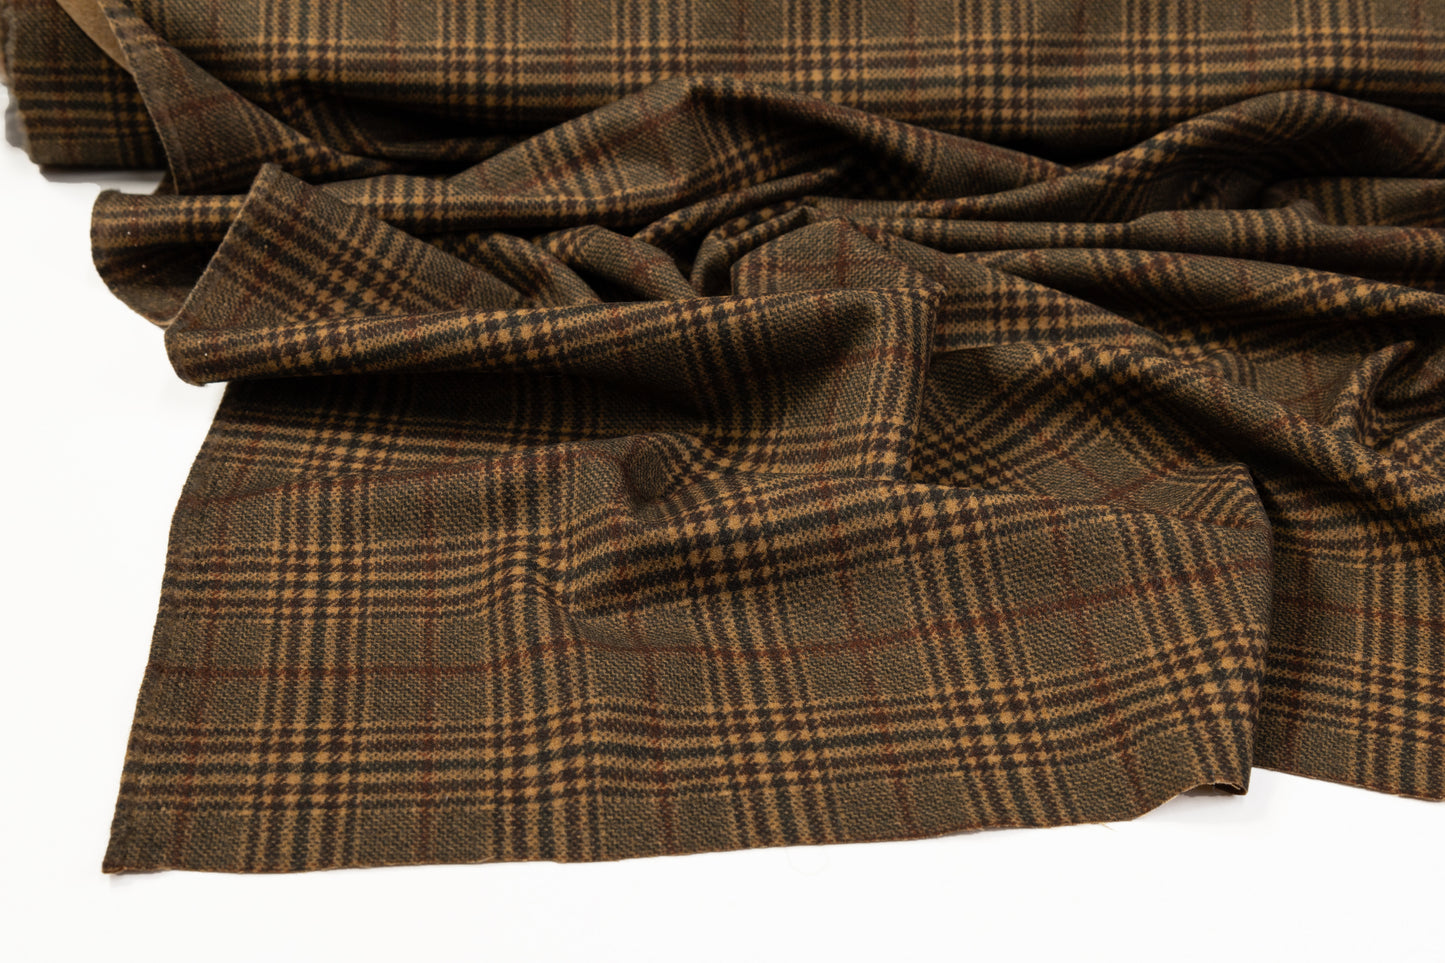 Plaid Printed Italian Wool Suiting - Brown